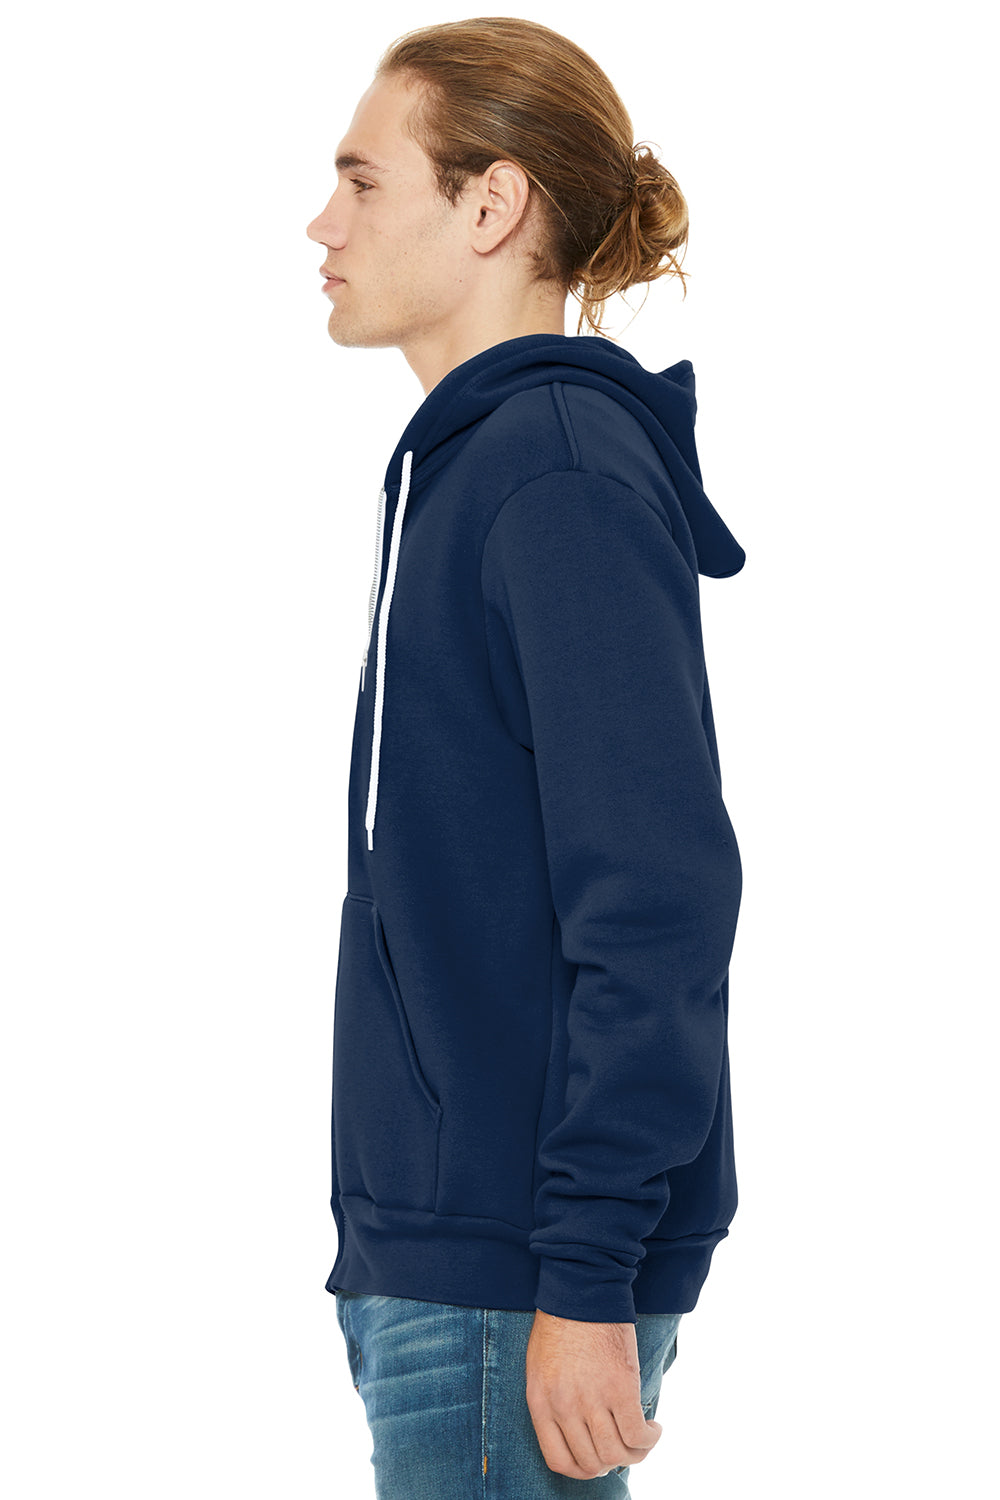 Bella + Canvas BC3739/3739 Mens Fleece Full Zip Hooded Sweatshirt Hoodie Navy Blue Model Side